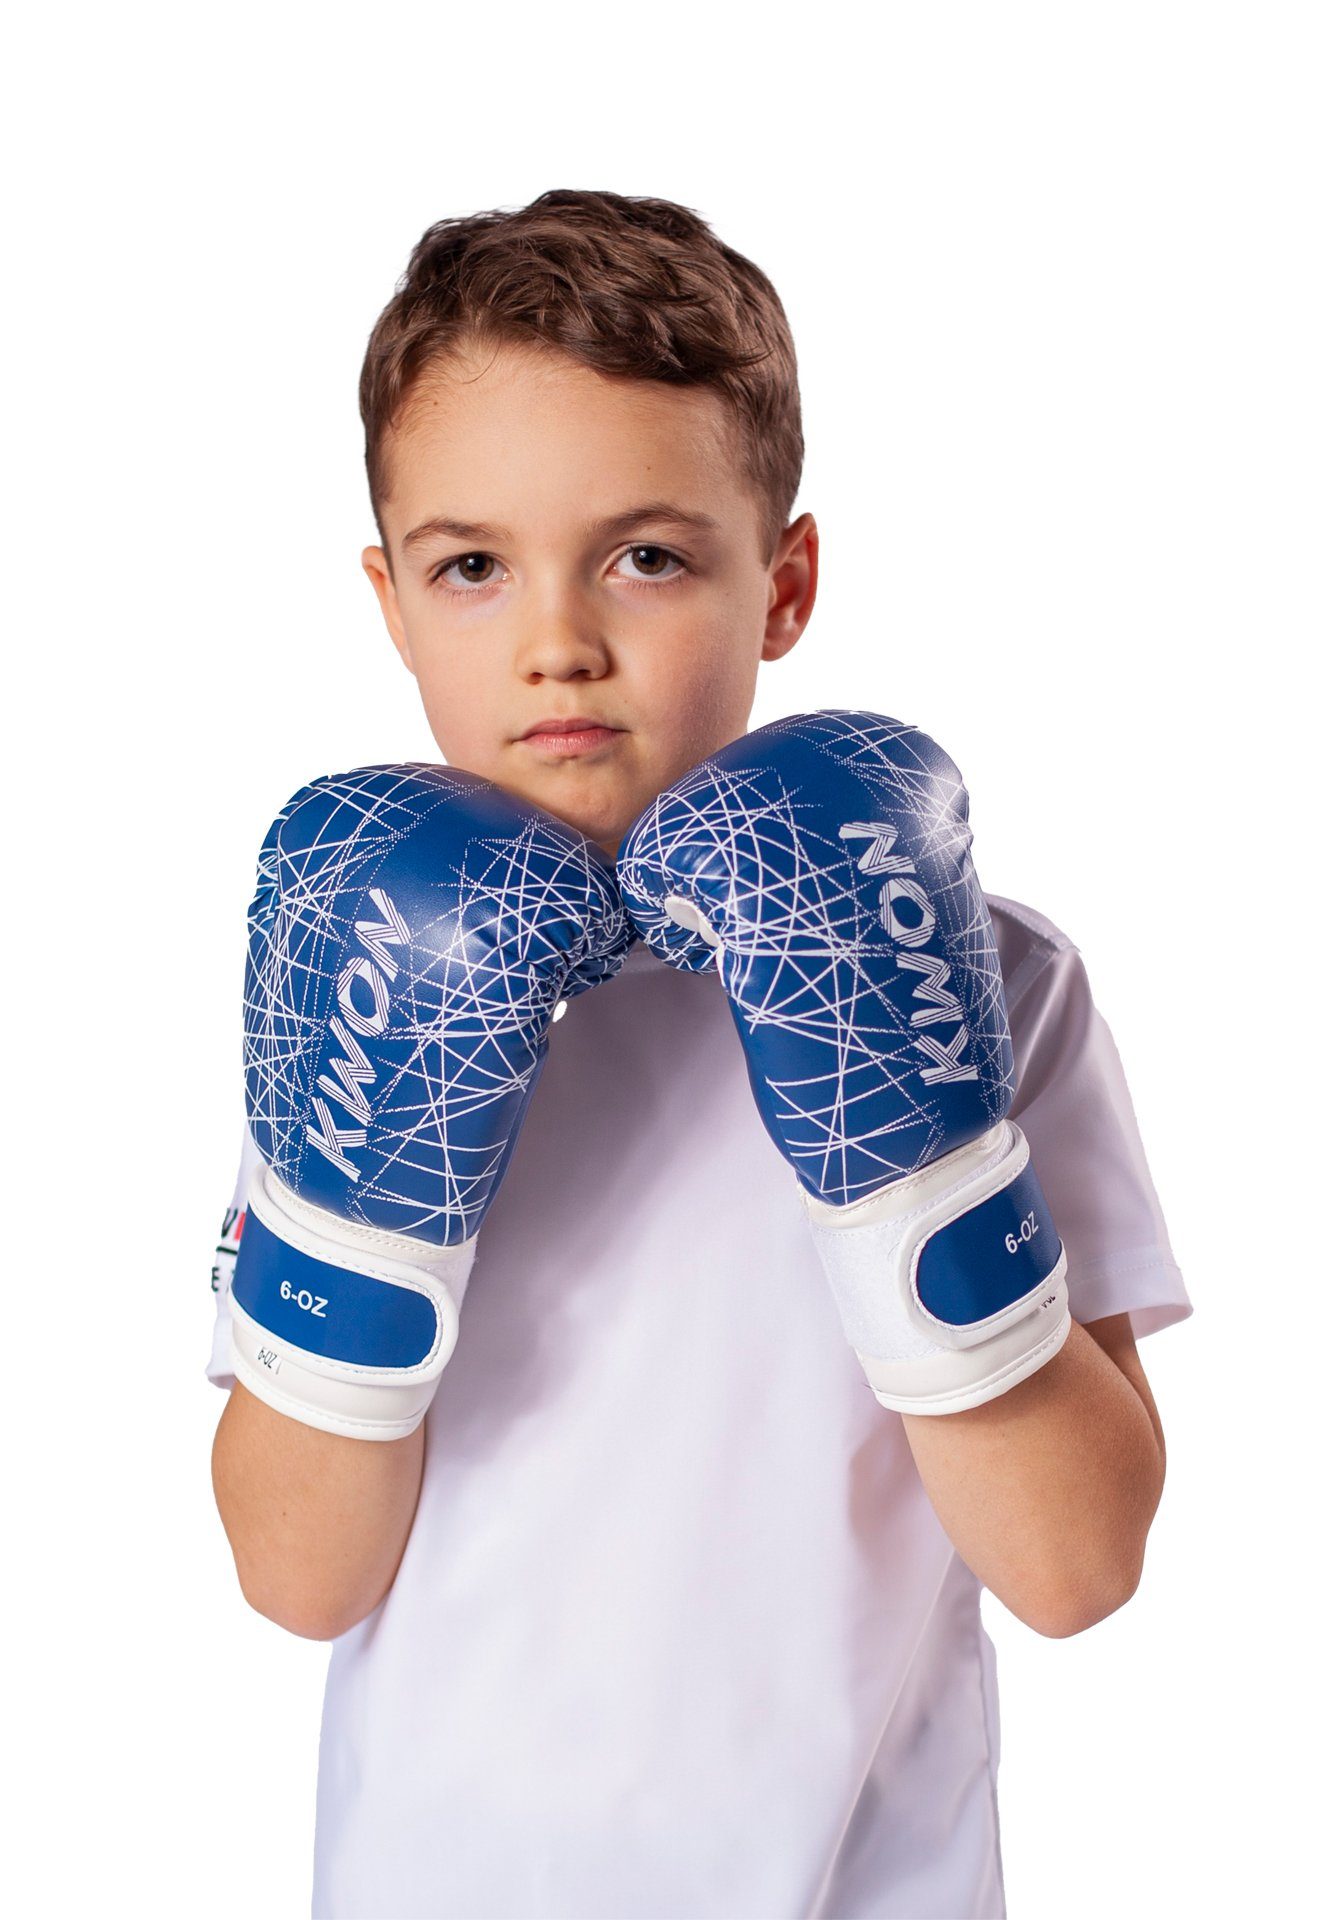 Kickboxen pink Qualität KWON Kids (small blau hochwertige 6 klein, Kinderboxhandschuhe), Boxhandschuhe Kinder Box-Handschuhe neon Unzen, Boxen MMA